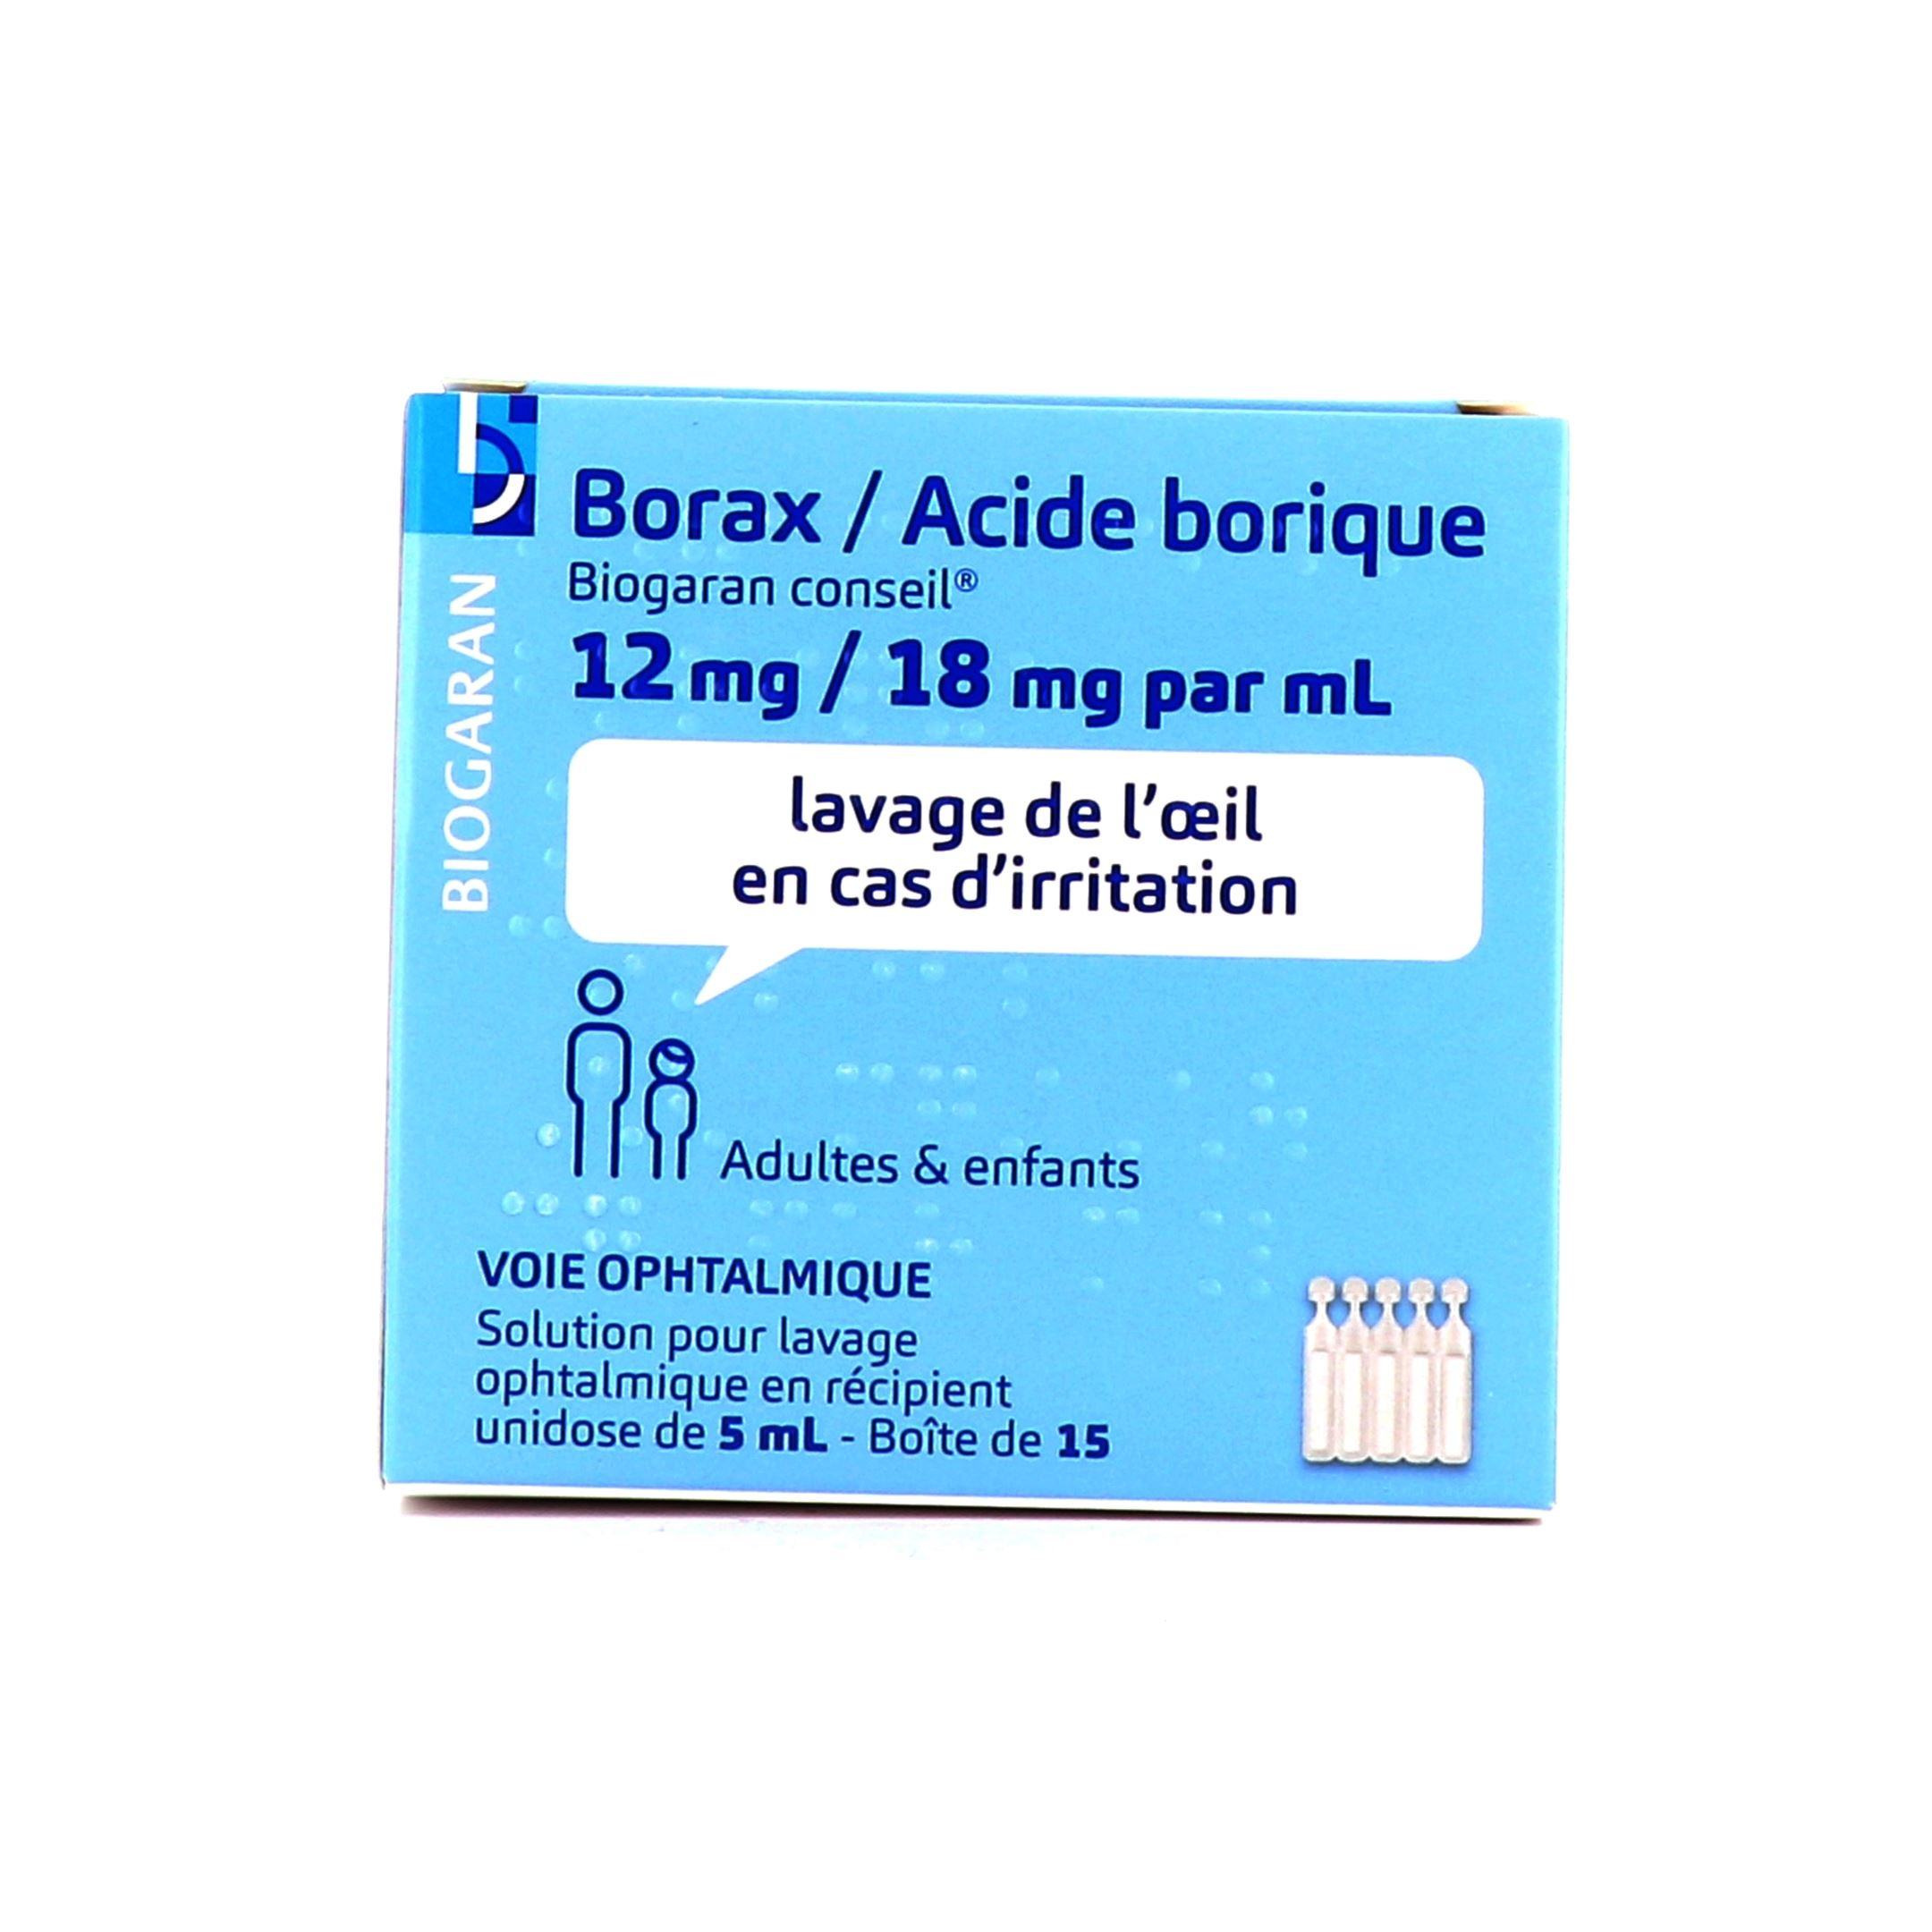 Borax Acide borique Viatris unidose - Lavage oculaire, yeux irrités